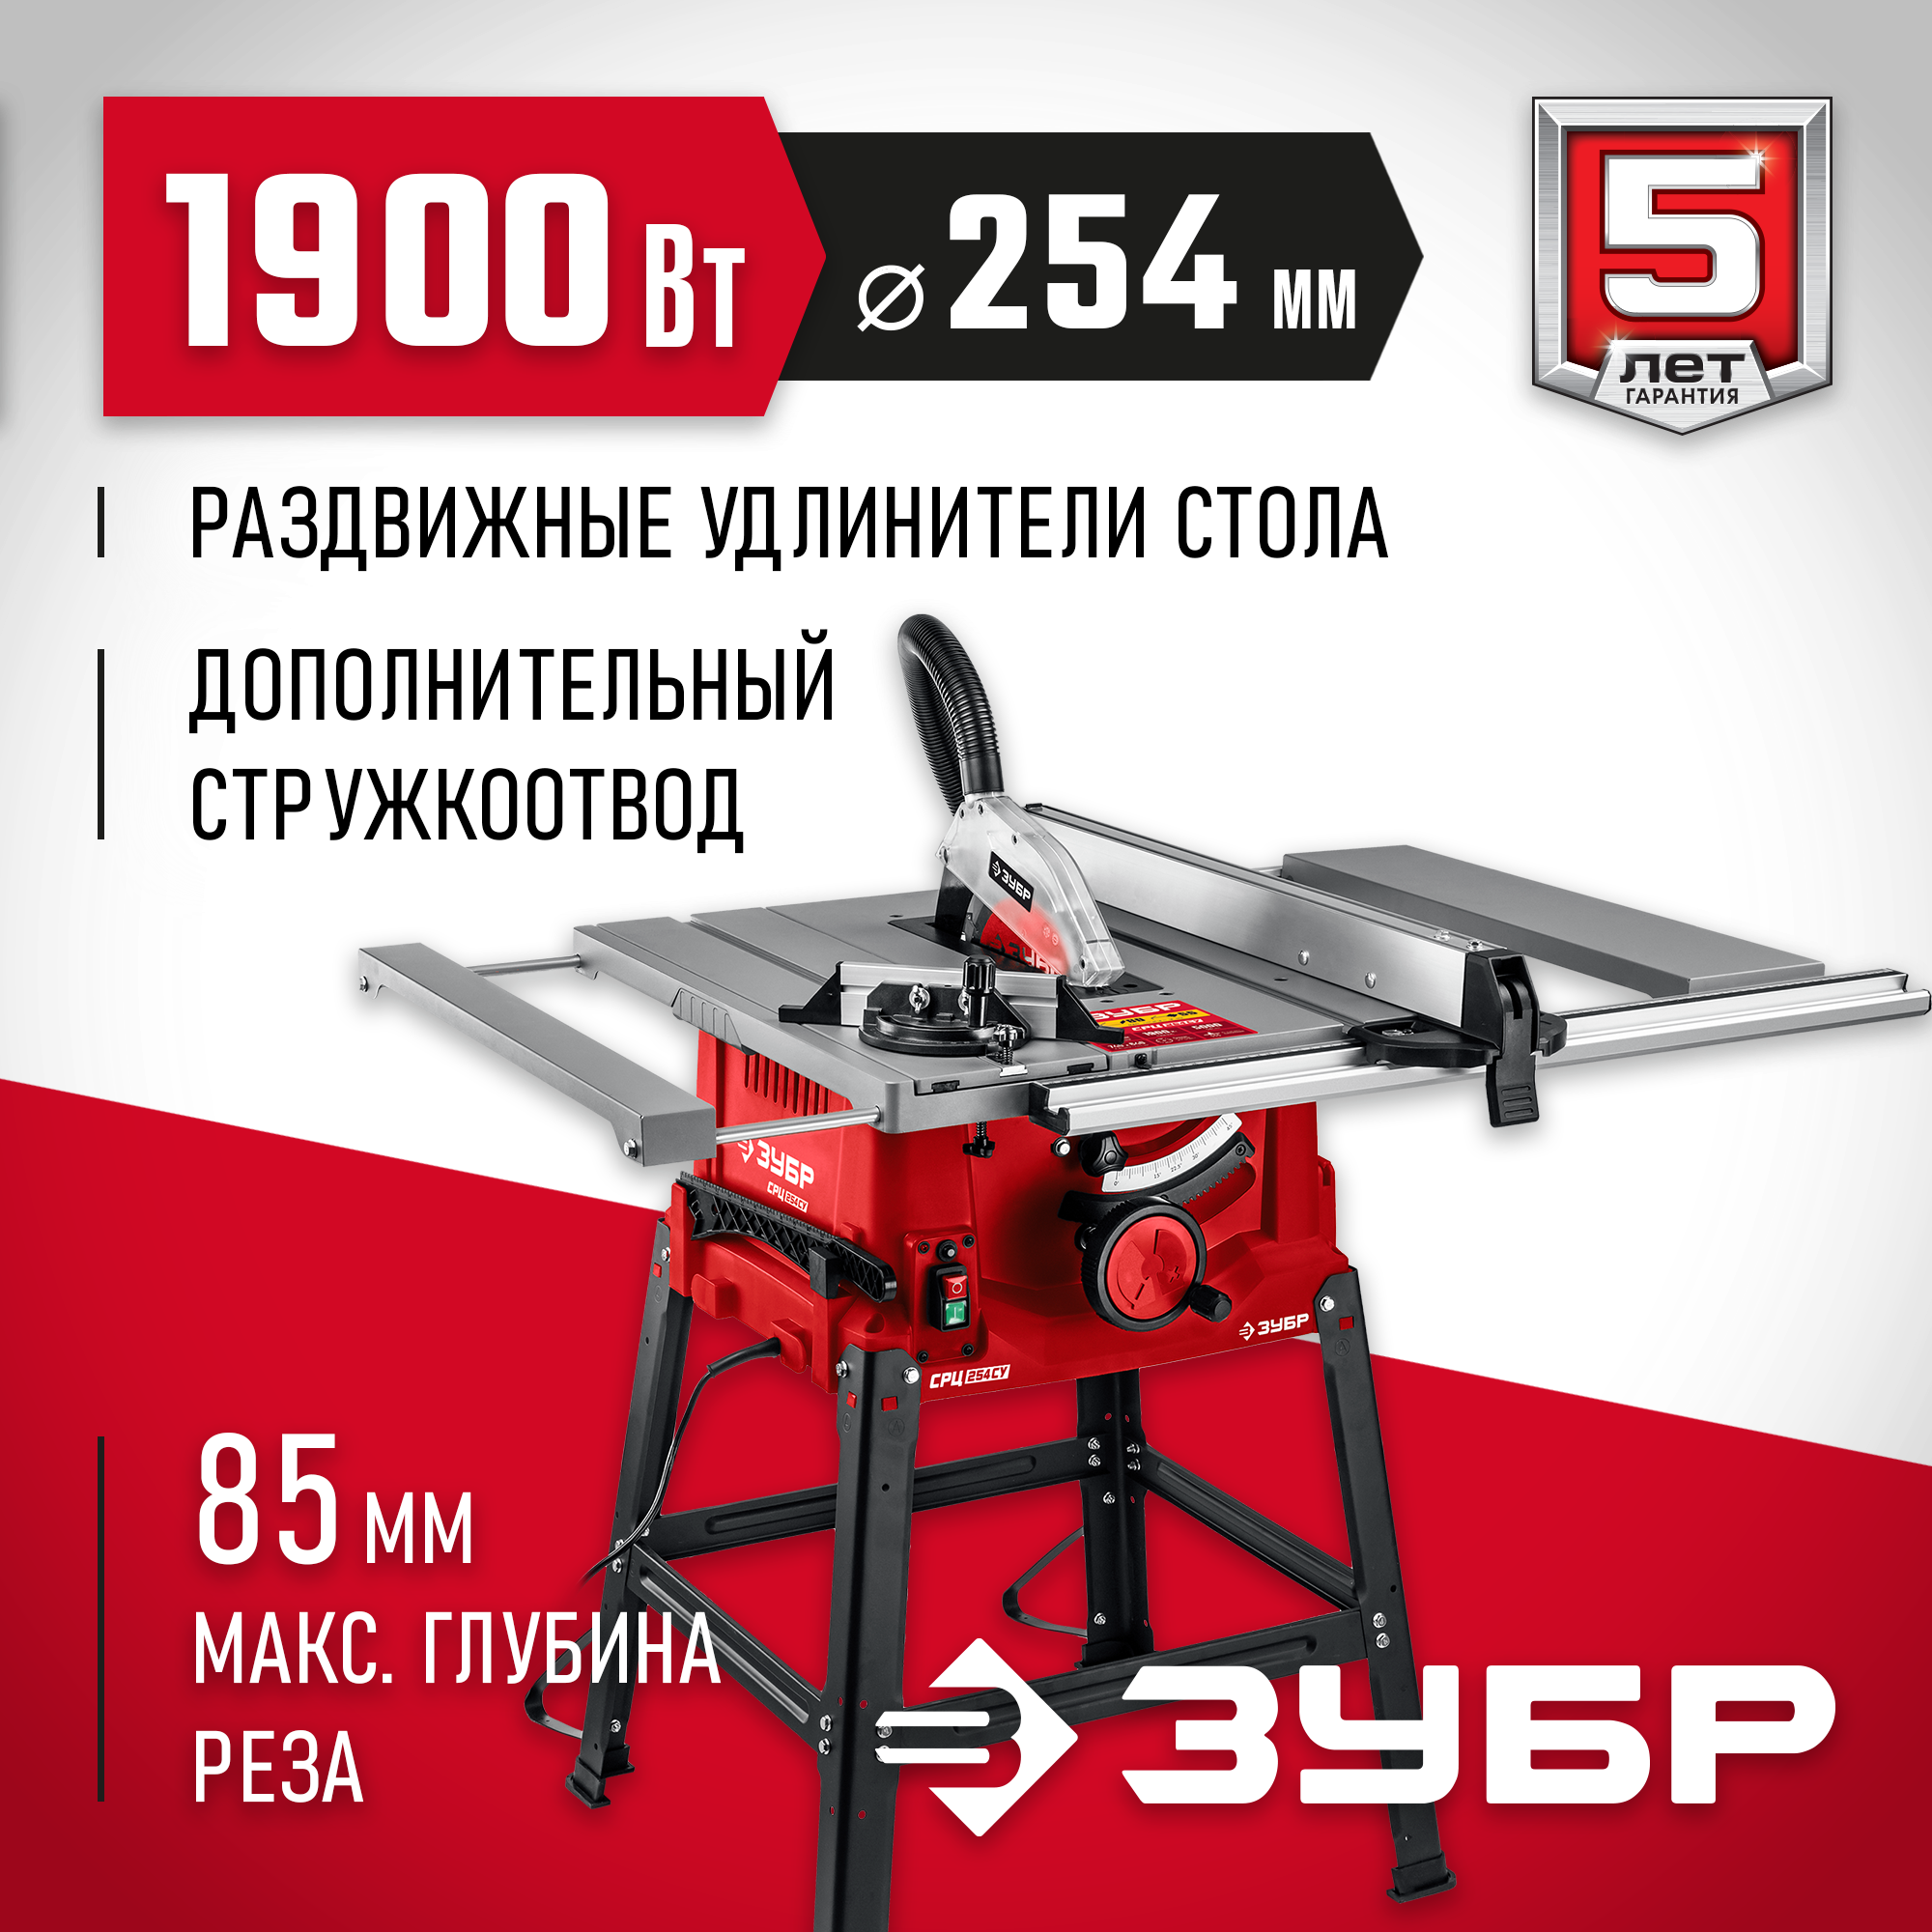 Распиловочный станок ЗУБР СРЦ-254су 1900 Вт